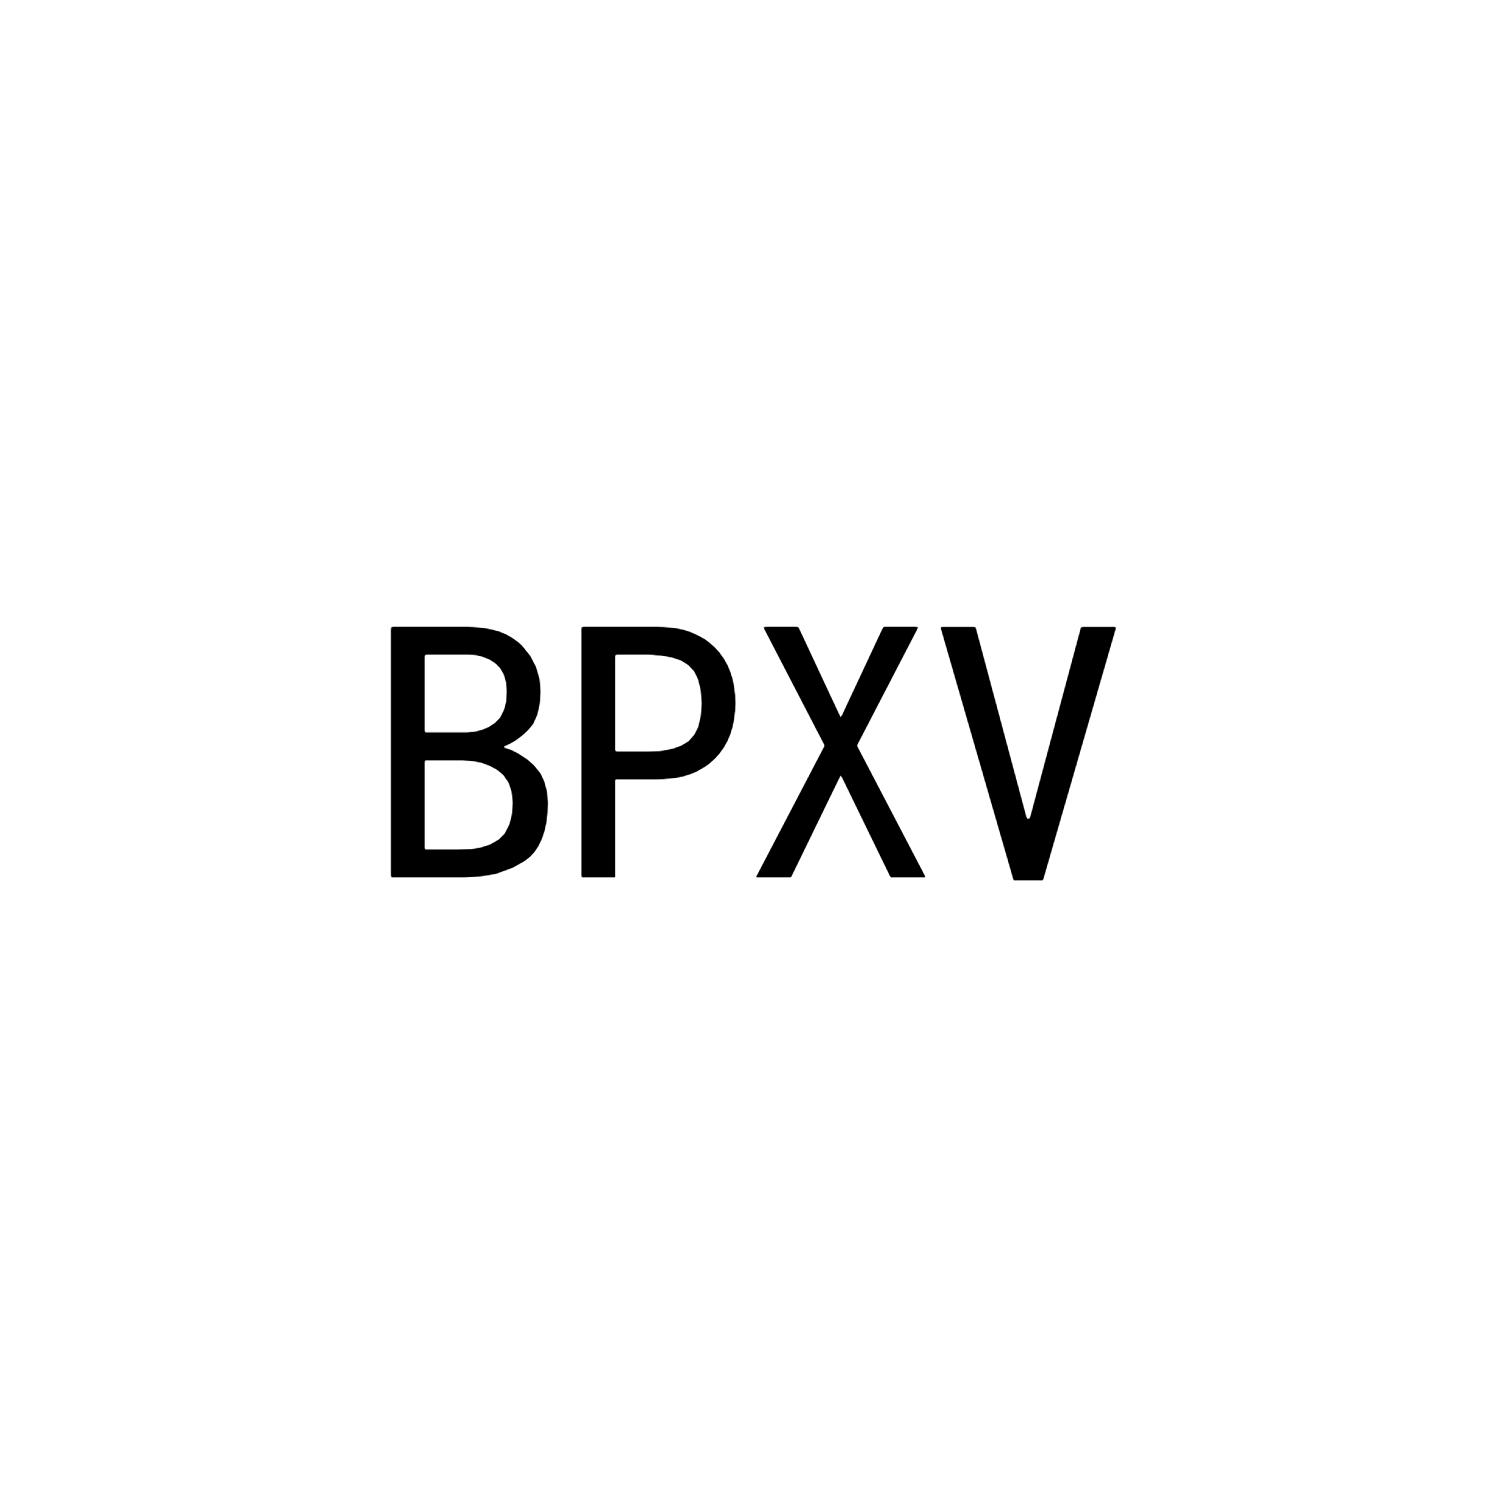 BPXV